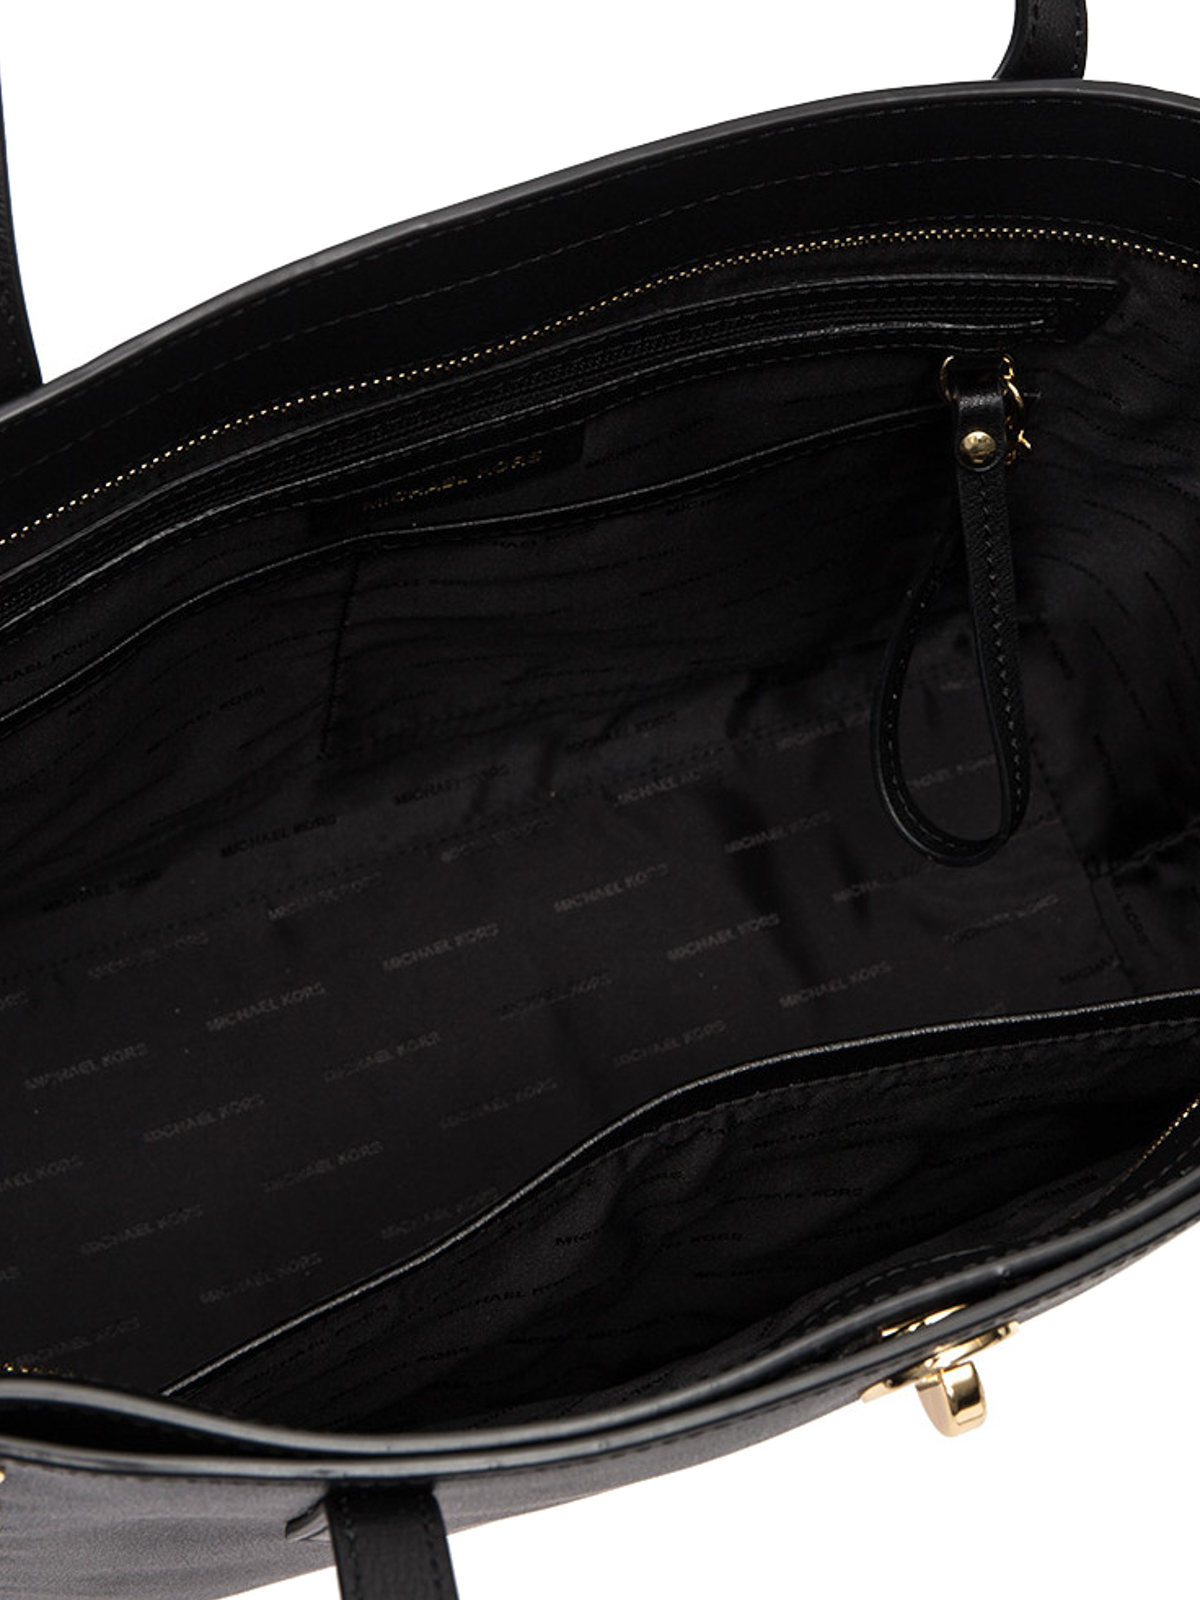 Totes bags Michael Kors - Rivington large studded tote - 30S7GR7T3L001